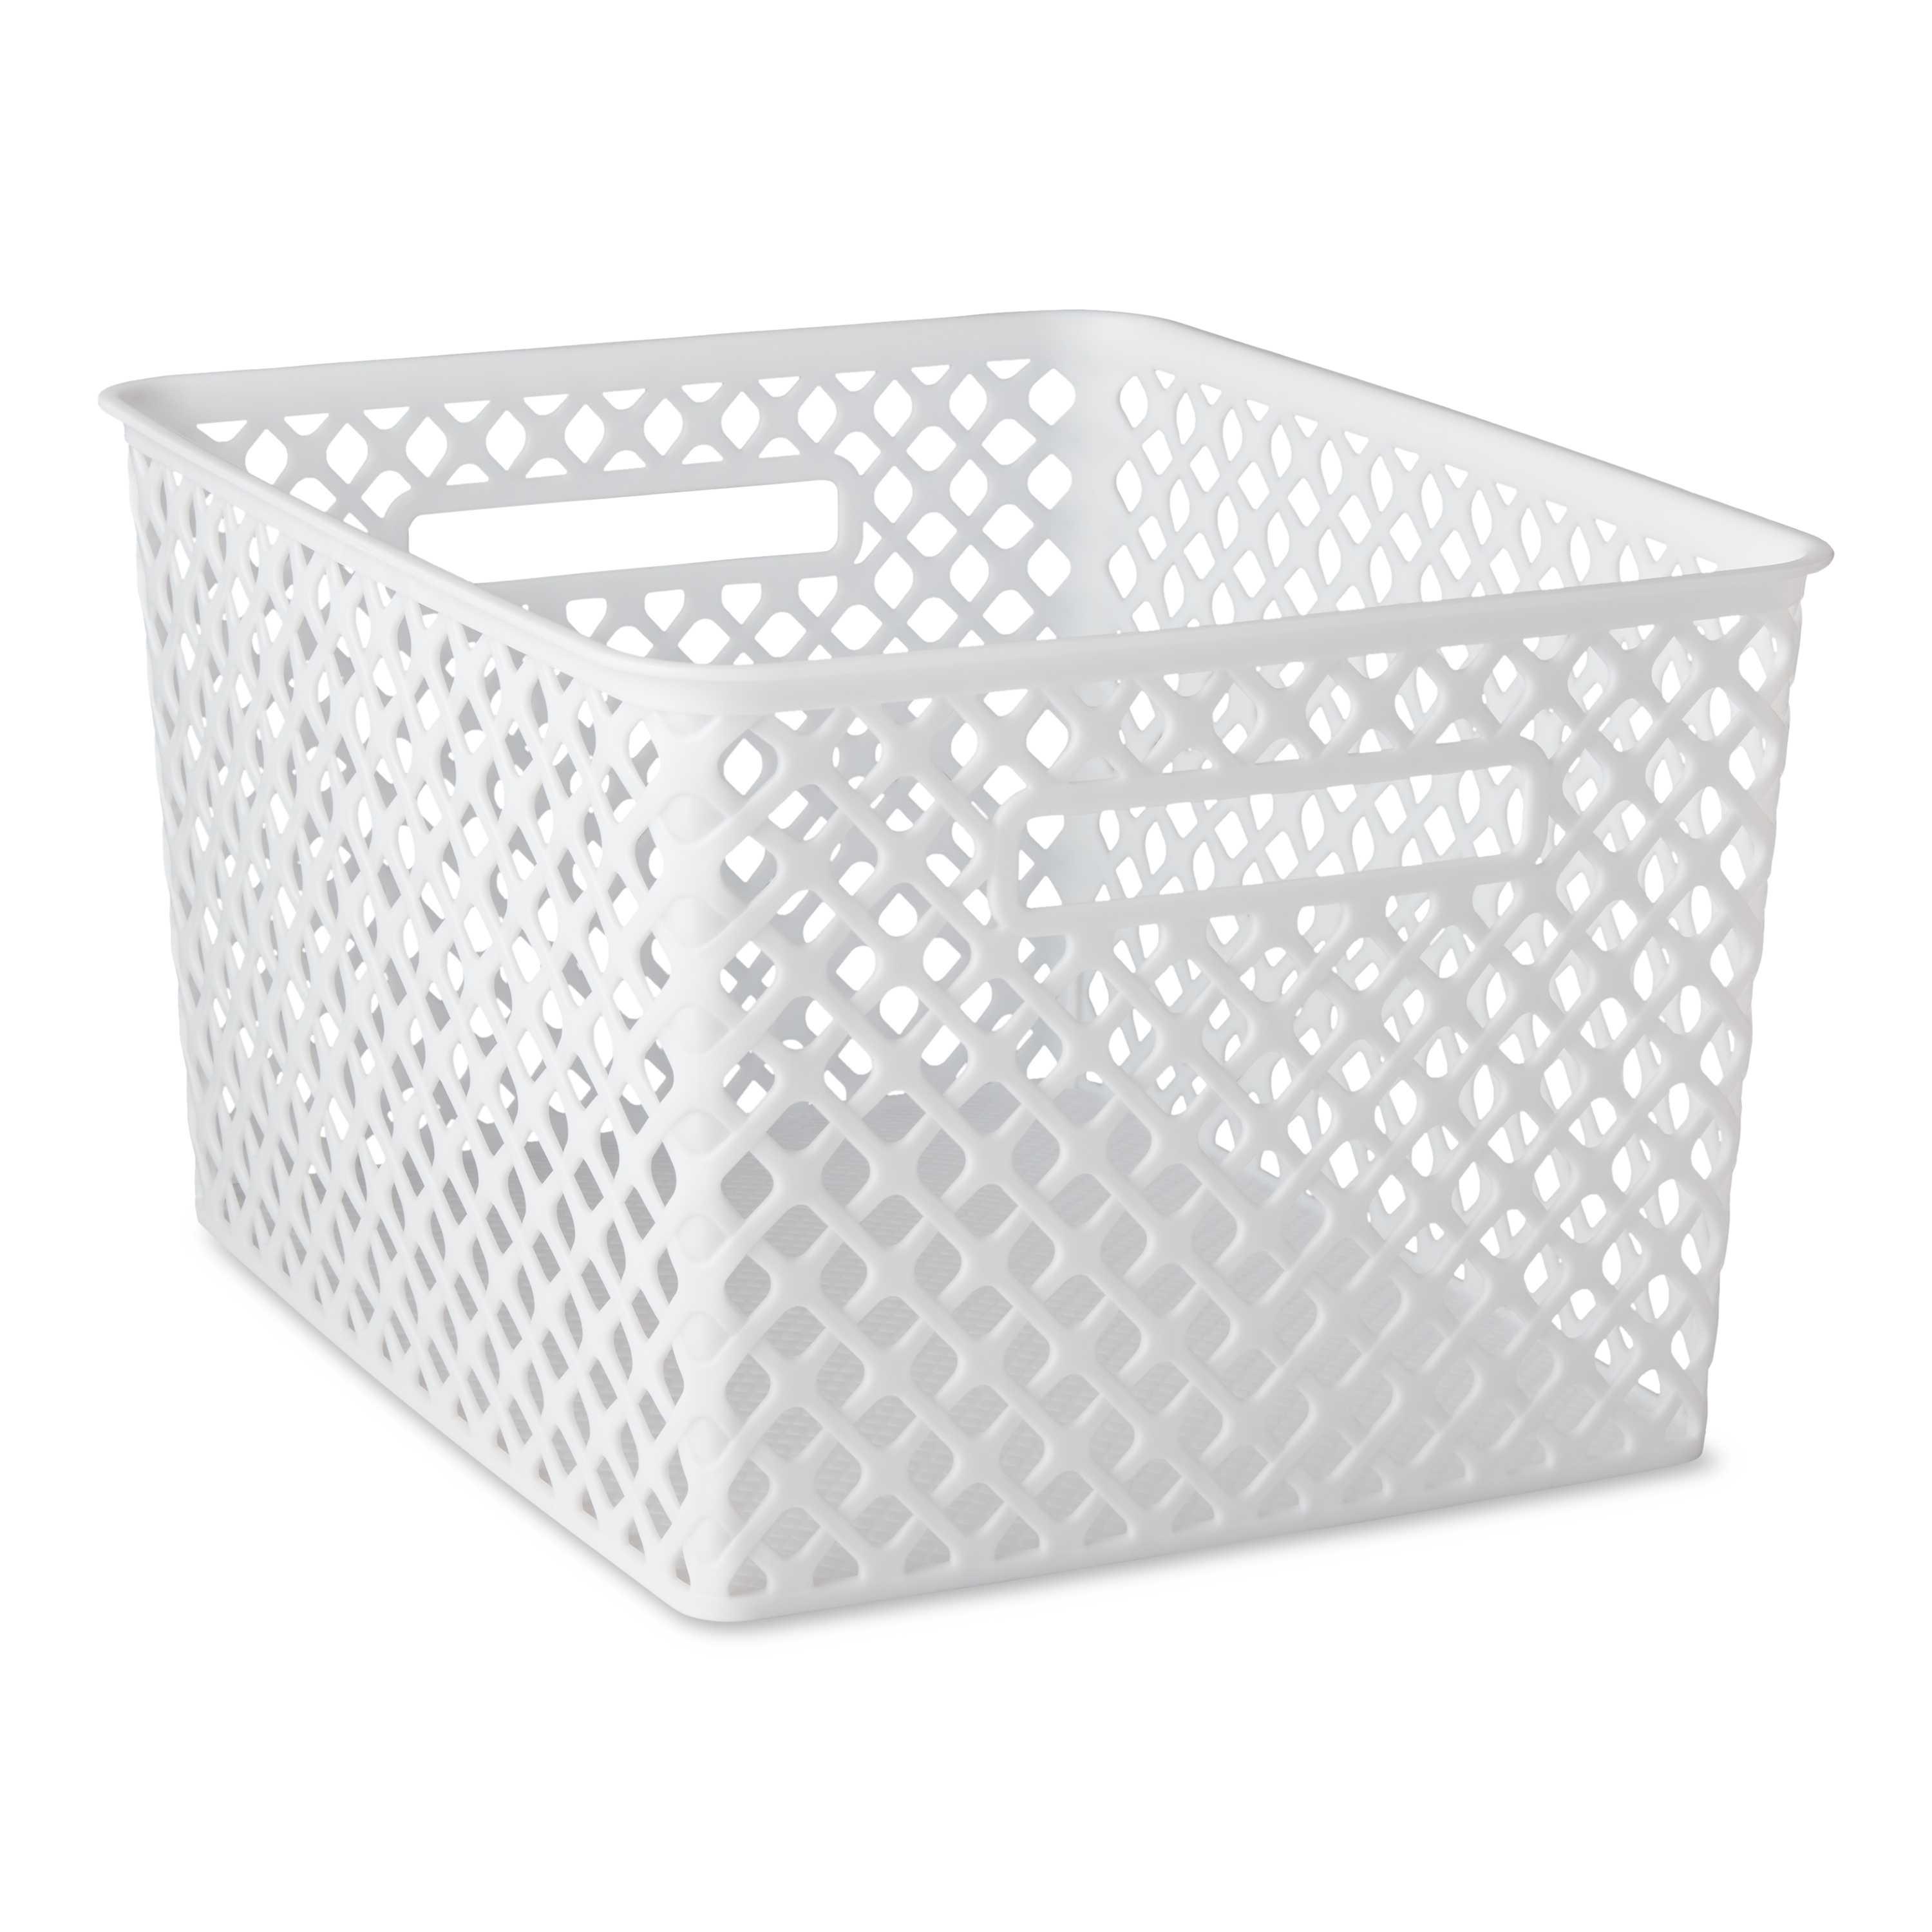 Mainstays Large White Decorative Storage Basket - image 1 of 9